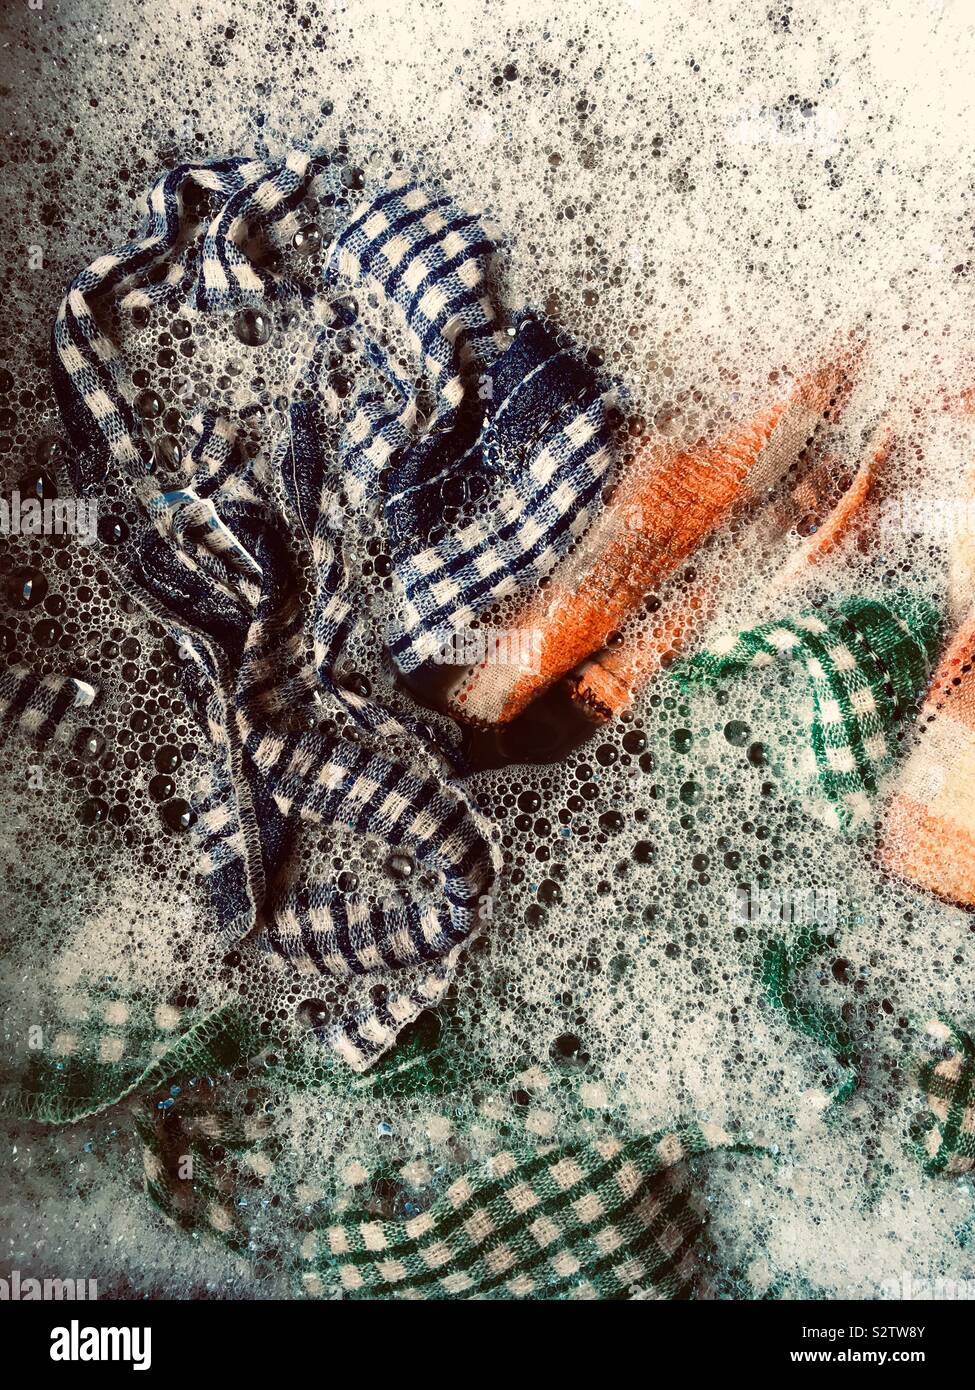 Wet hand towel in water Stock Photo